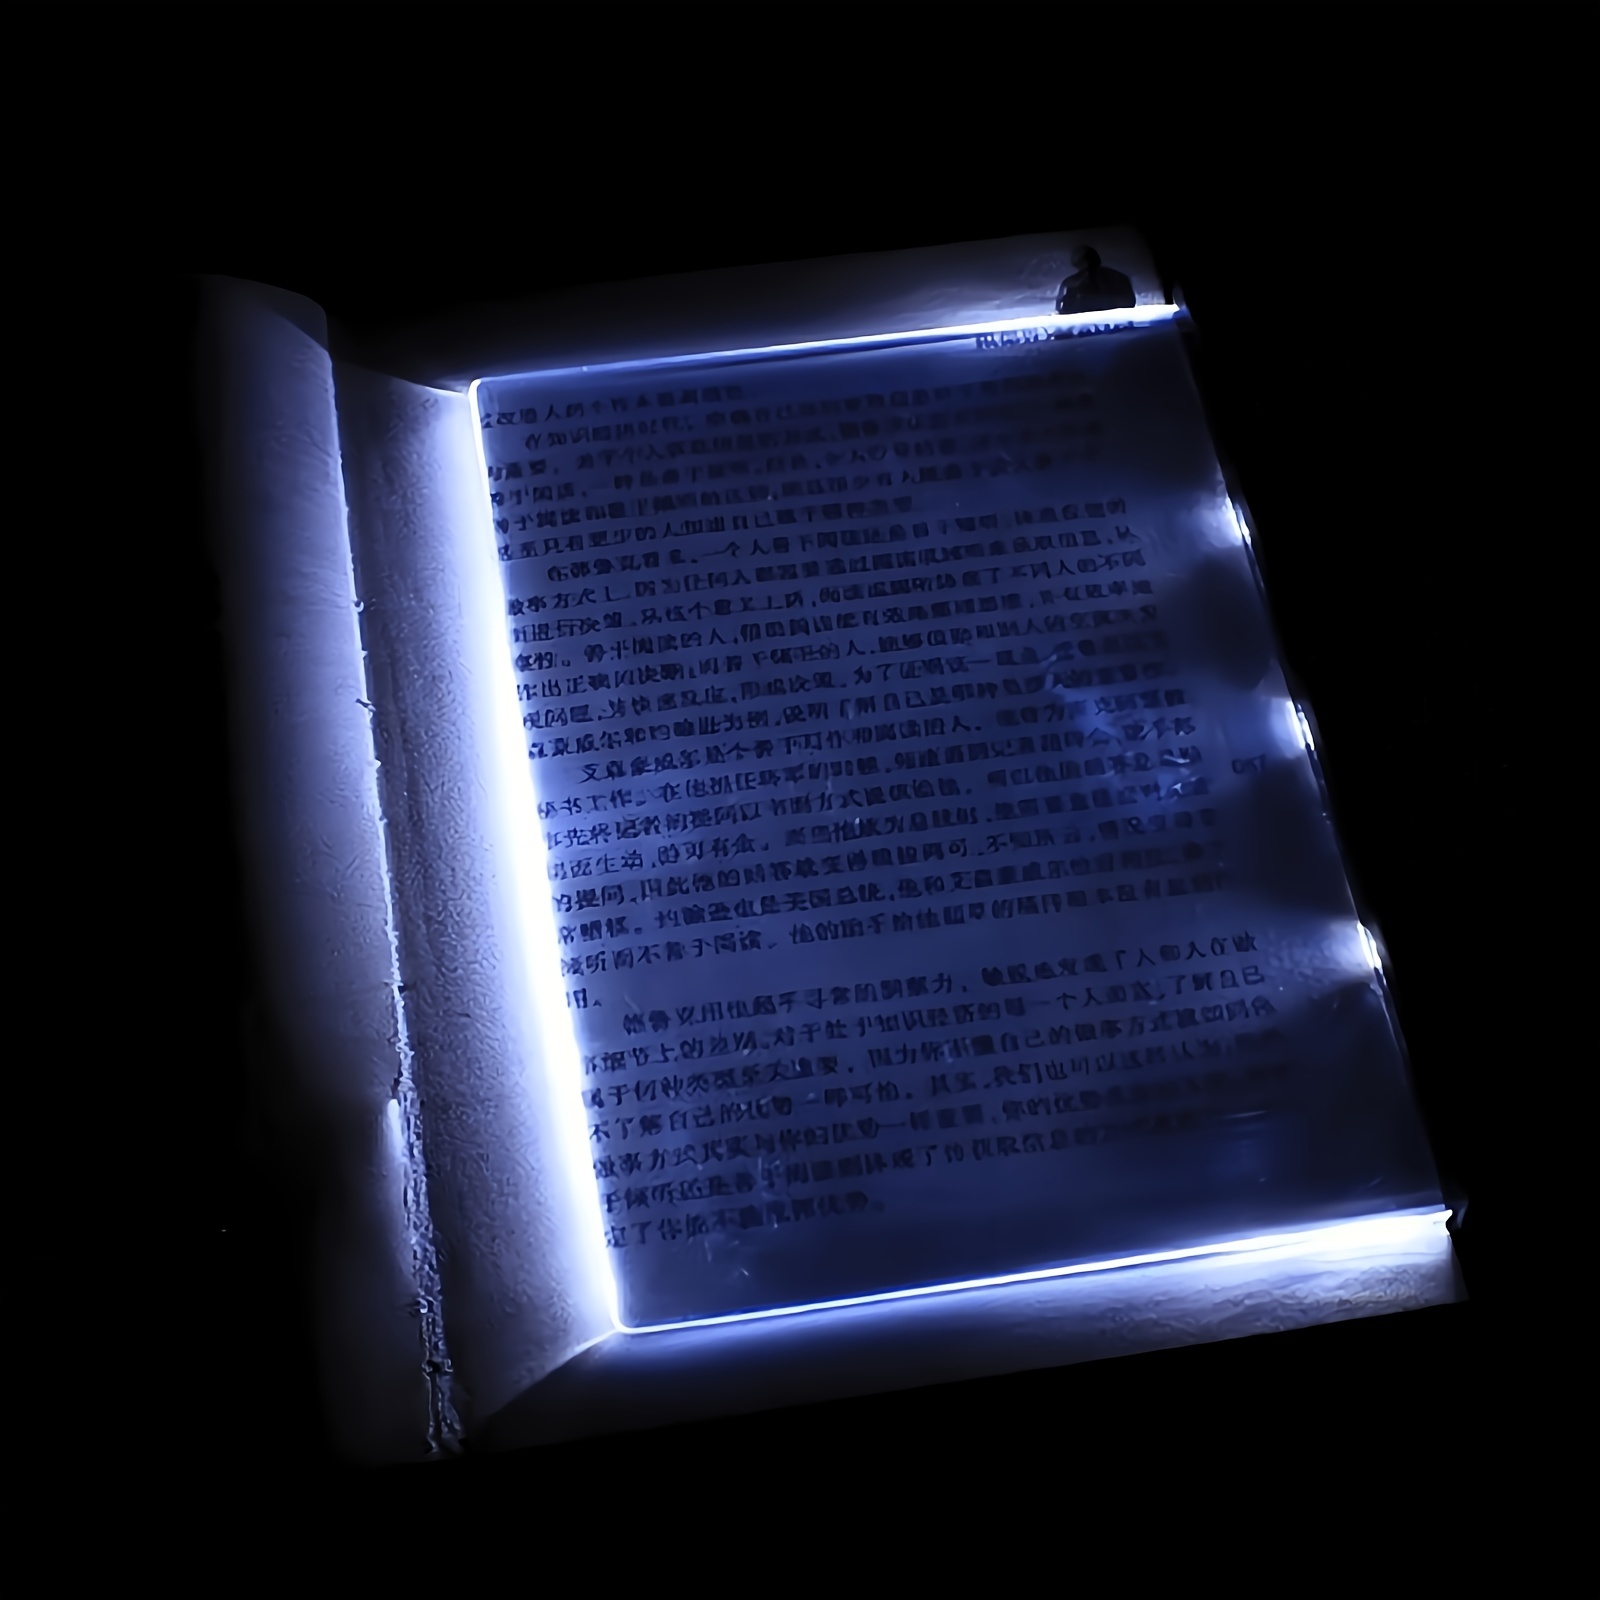  Luz de libro plana,Luz de lectura LED para leer en la cama,Luz  portátil para el cuidado de los ojos,Lámpara de lectura de luces nocturnas  claras,Luz LED transparente para libro de página